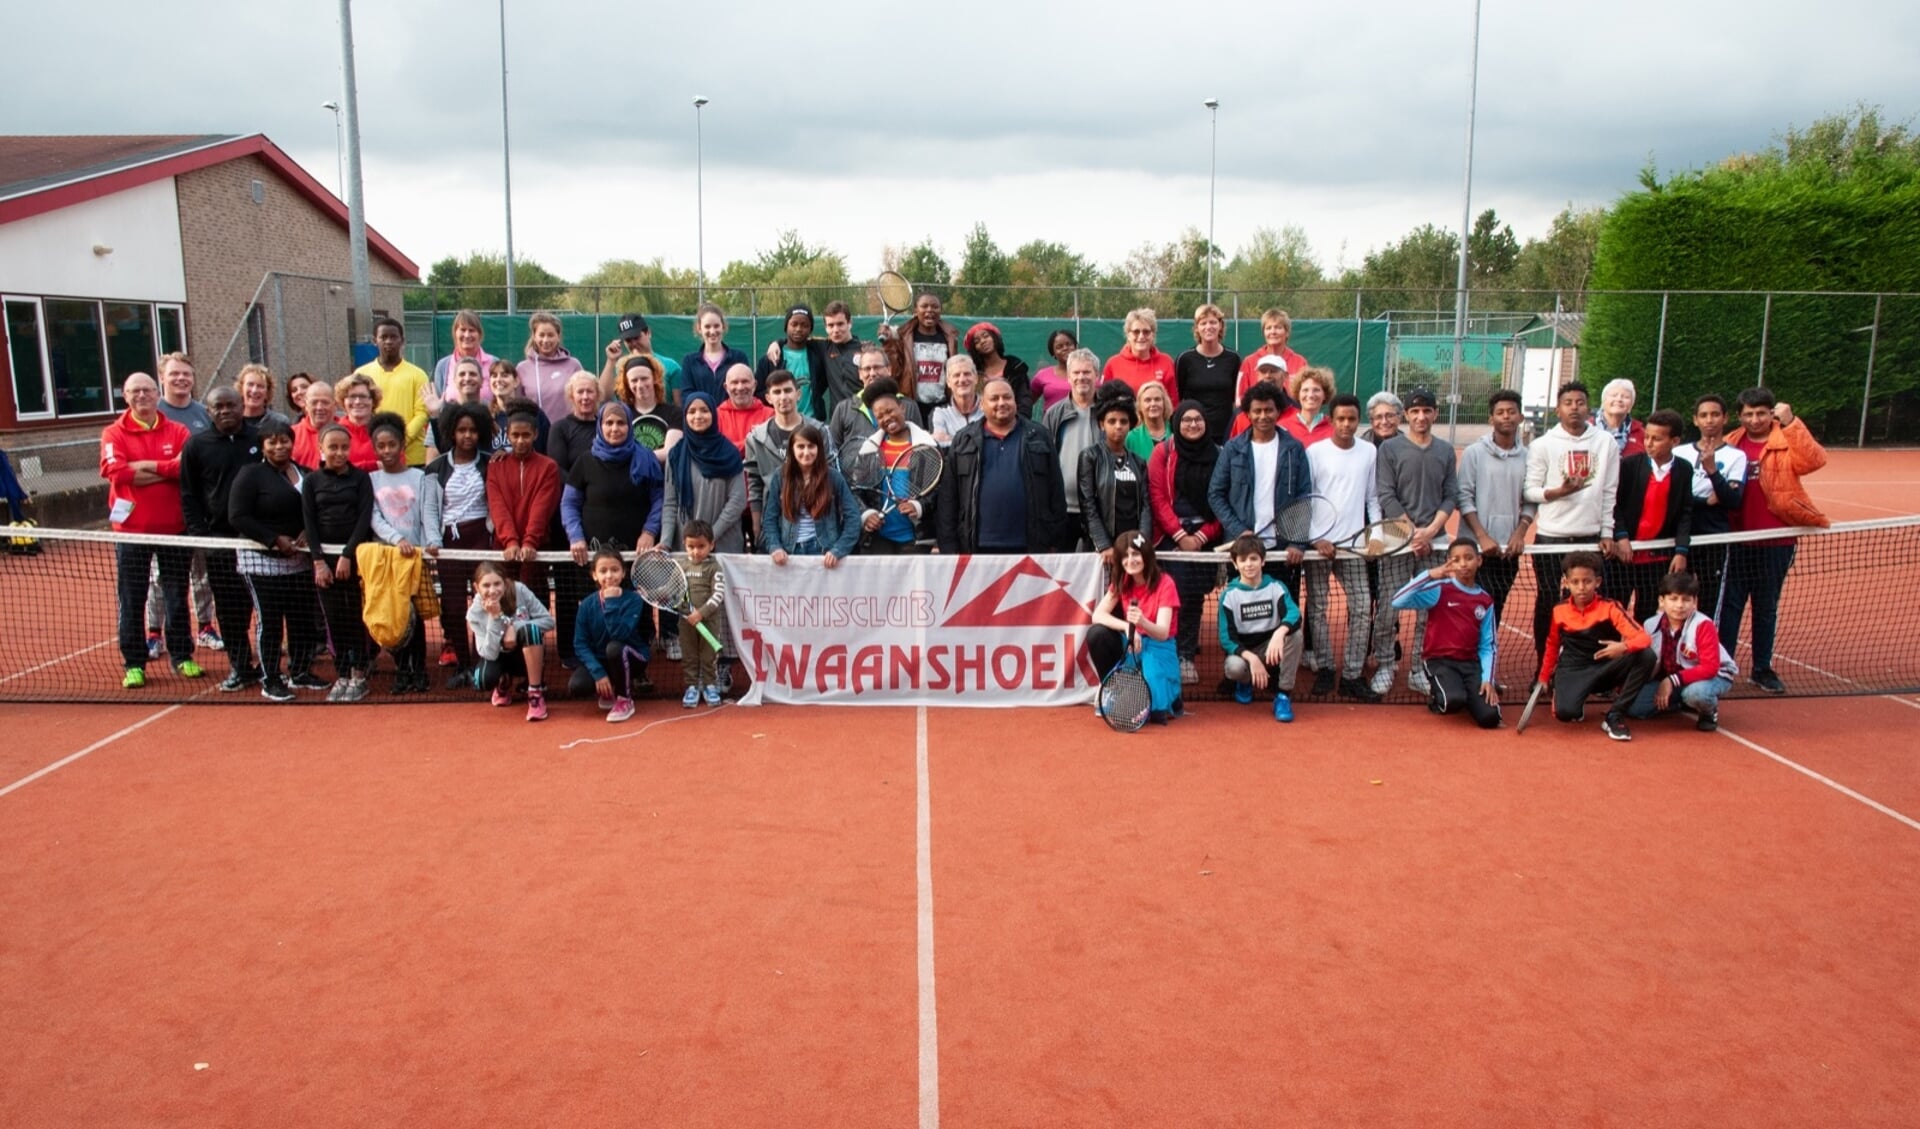 De leerlingen van ISK beleefden samen met de vrijwilligers van de tennisclub een topdag